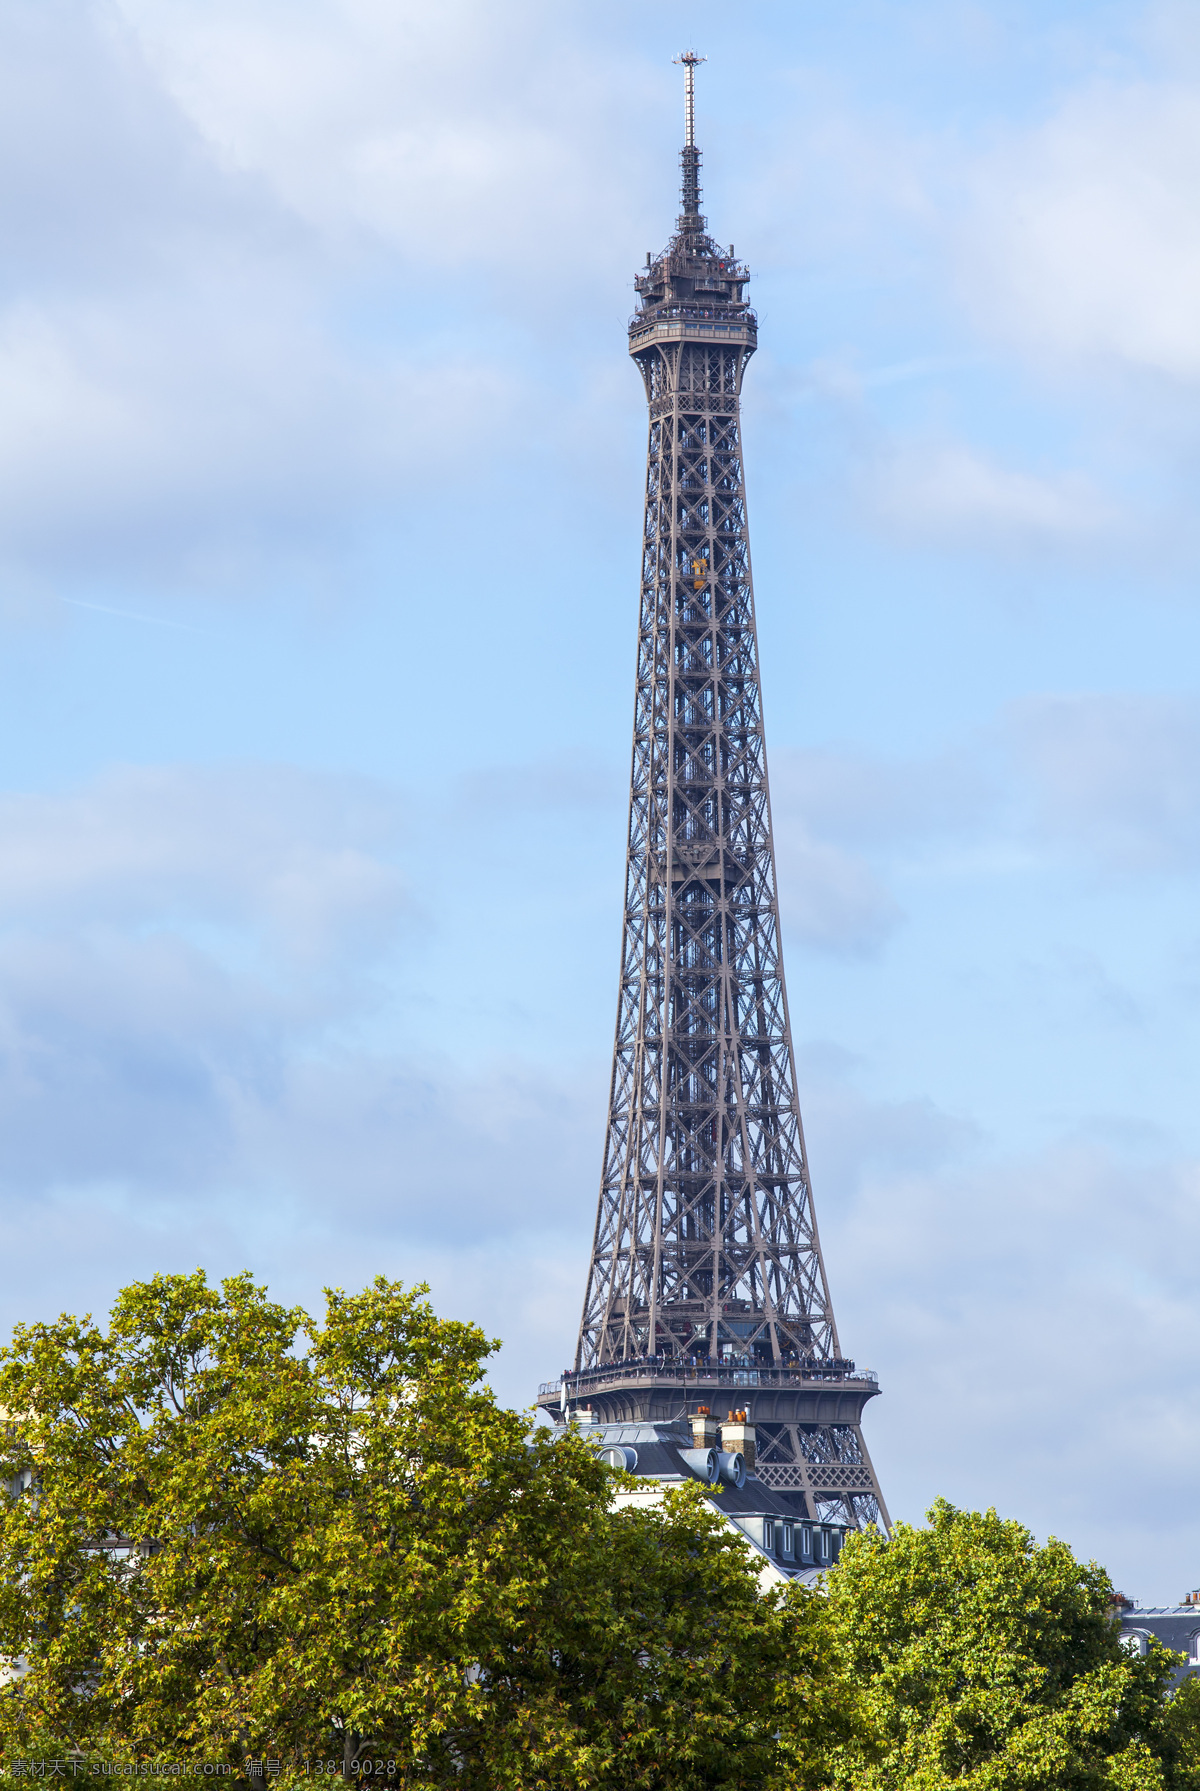 蓝天 下 艾菲尔铁塔 建筑风光 树 城市图片 法国建筑 巴黎风光 铁塔 都市风光 美丽风光 美丽风景 名胜古迹 旅游胜地 建筑设计 环境家居 黑色